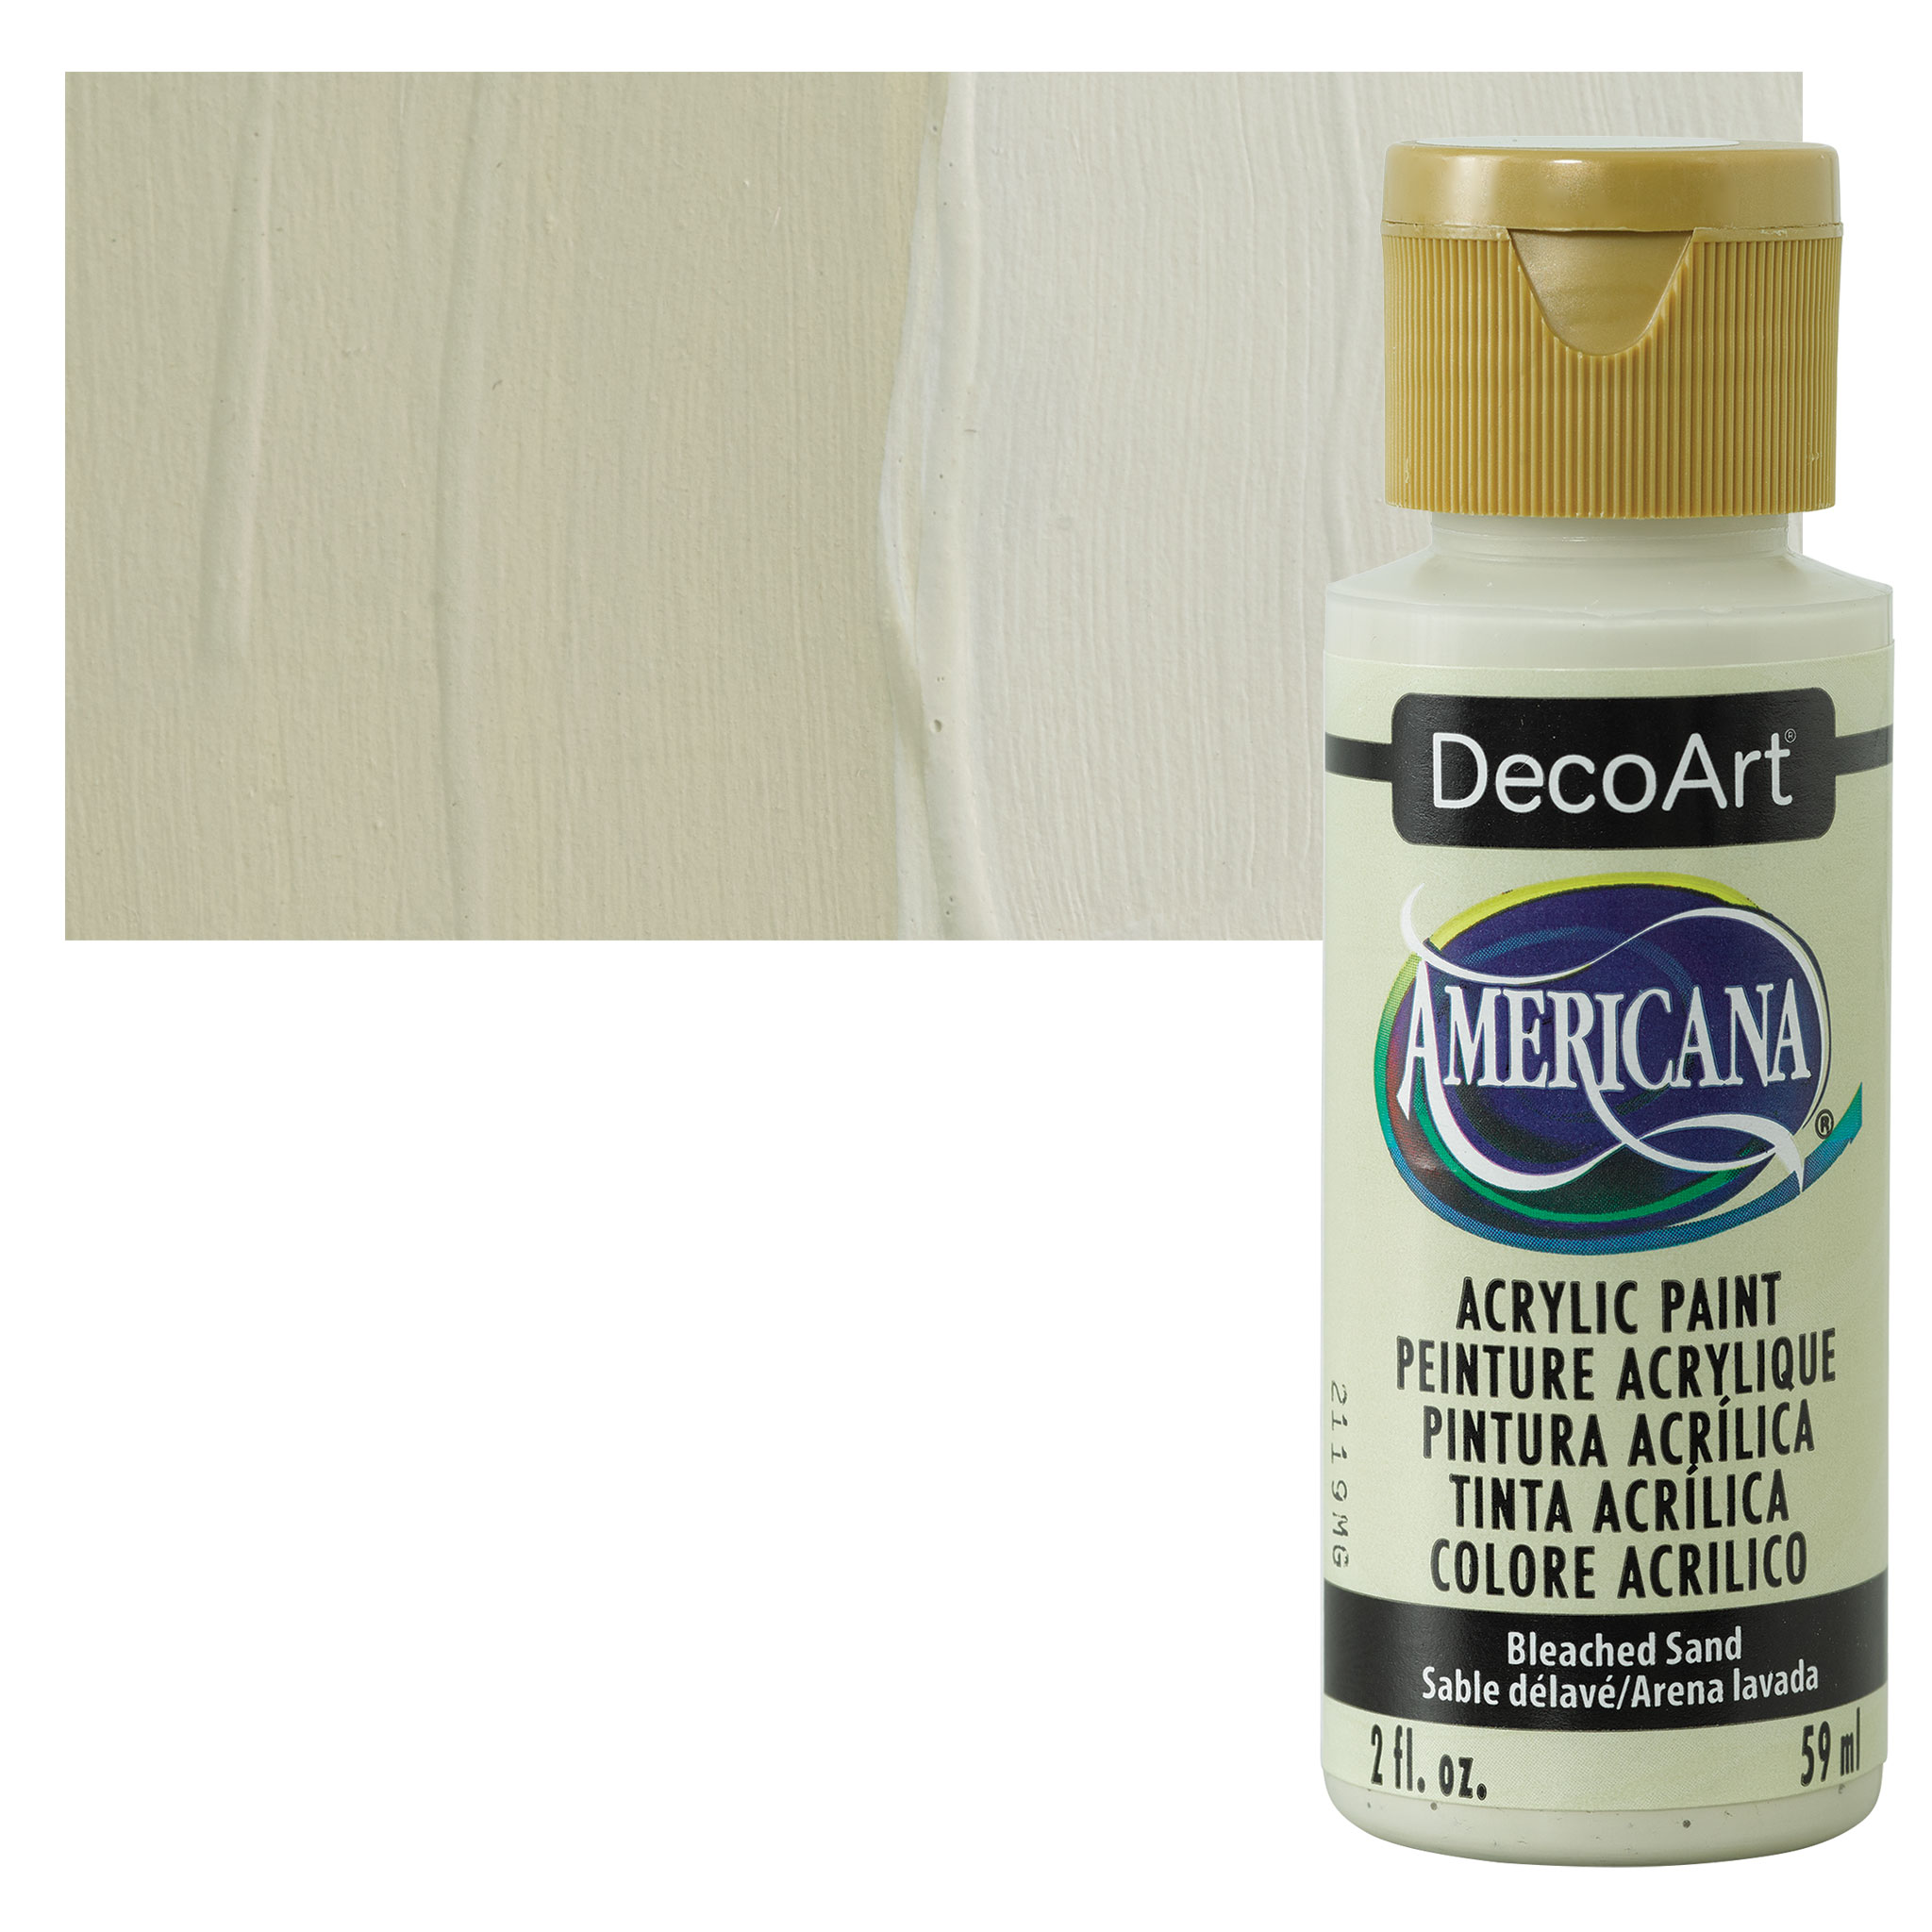  DecoArt Americana Acrylic Paint, 2-Ounce, Driftwood : Health &  Household